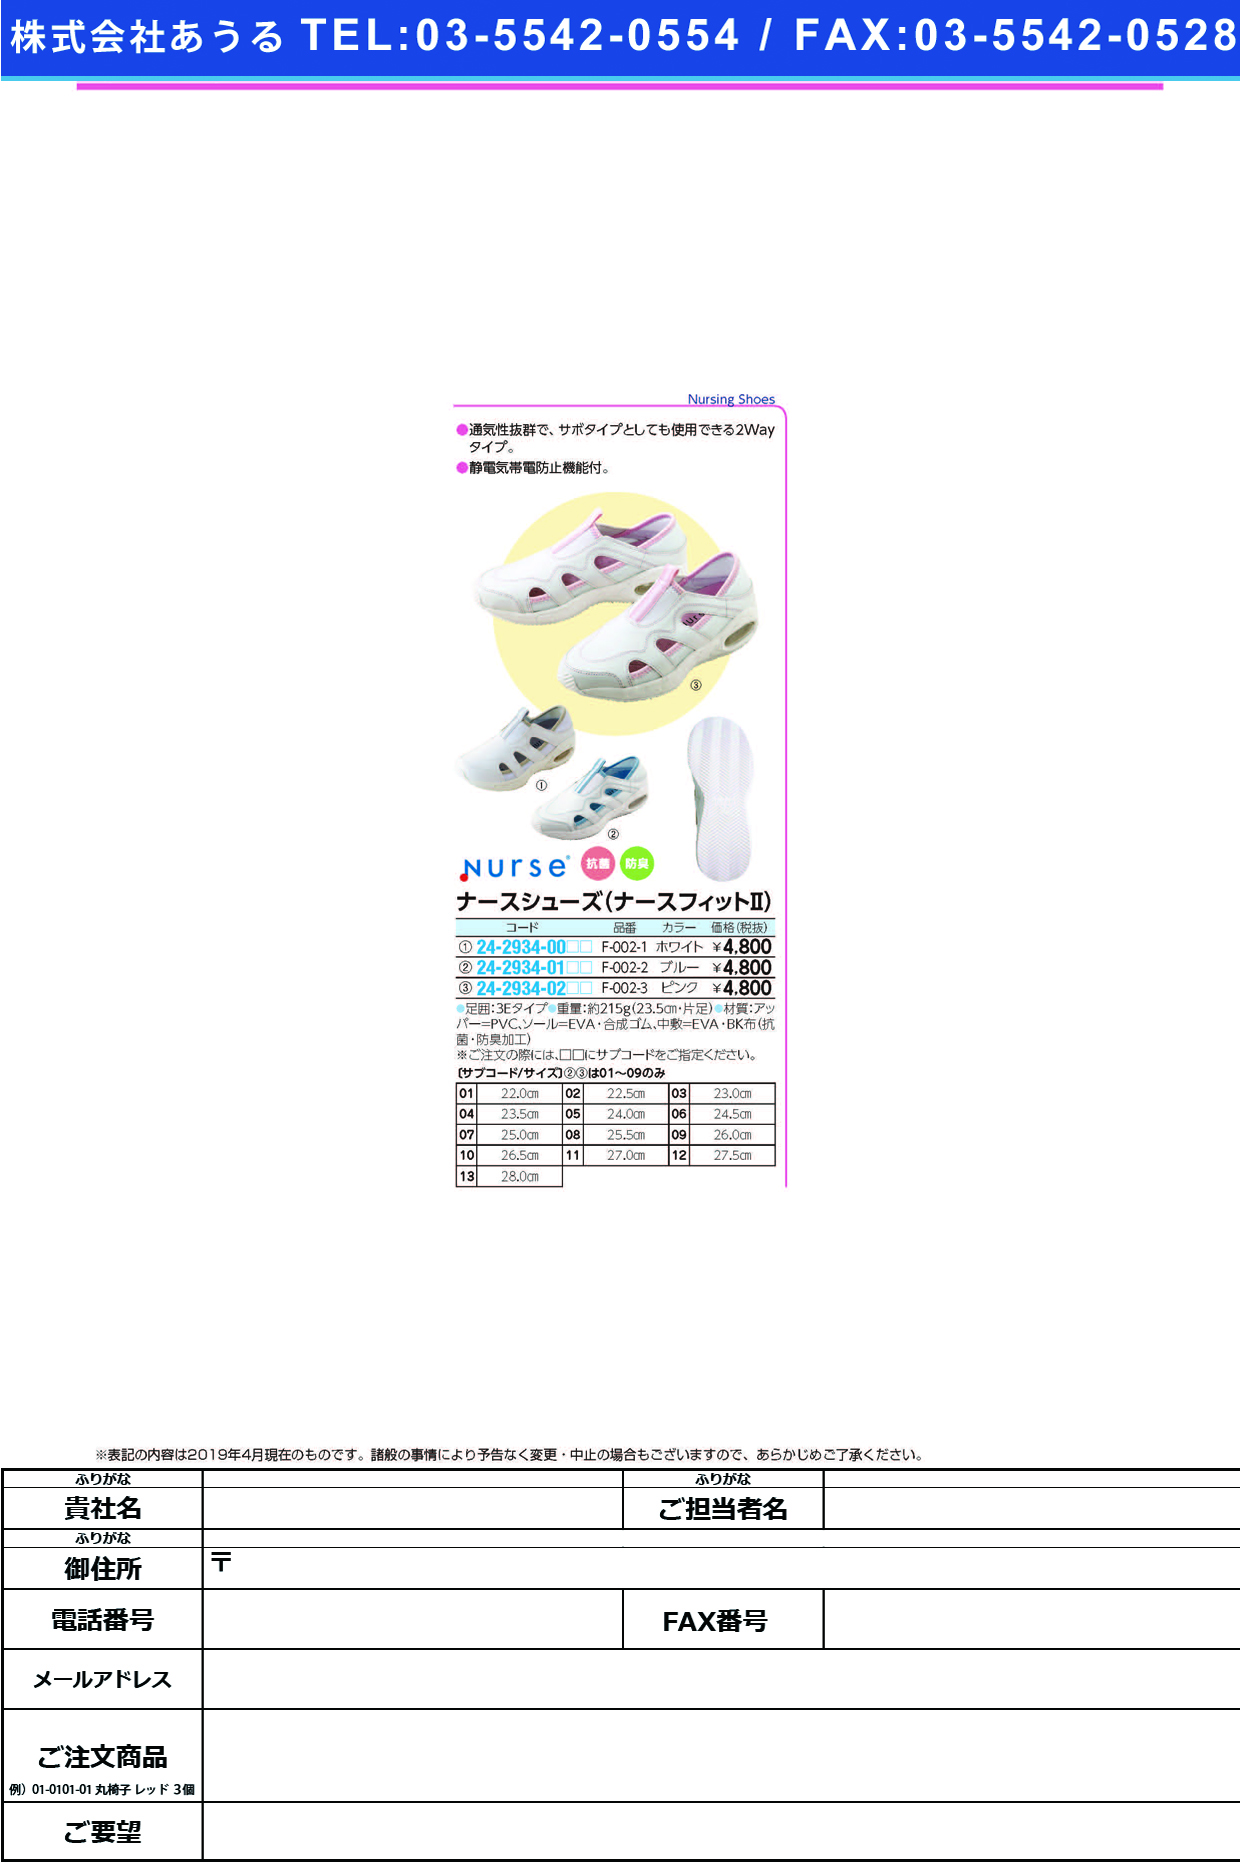 (24-2934-01)ナースシューズナースフィットⅡ F-002-2(ﾌﾞﾙｰ) ﾅｰｽｼｭｰｽﾞﾅｰｽﾌｨｯﾄ2 ２３．０ｃｍ(フォーク)【1足単位】【2019年カタログ商品】